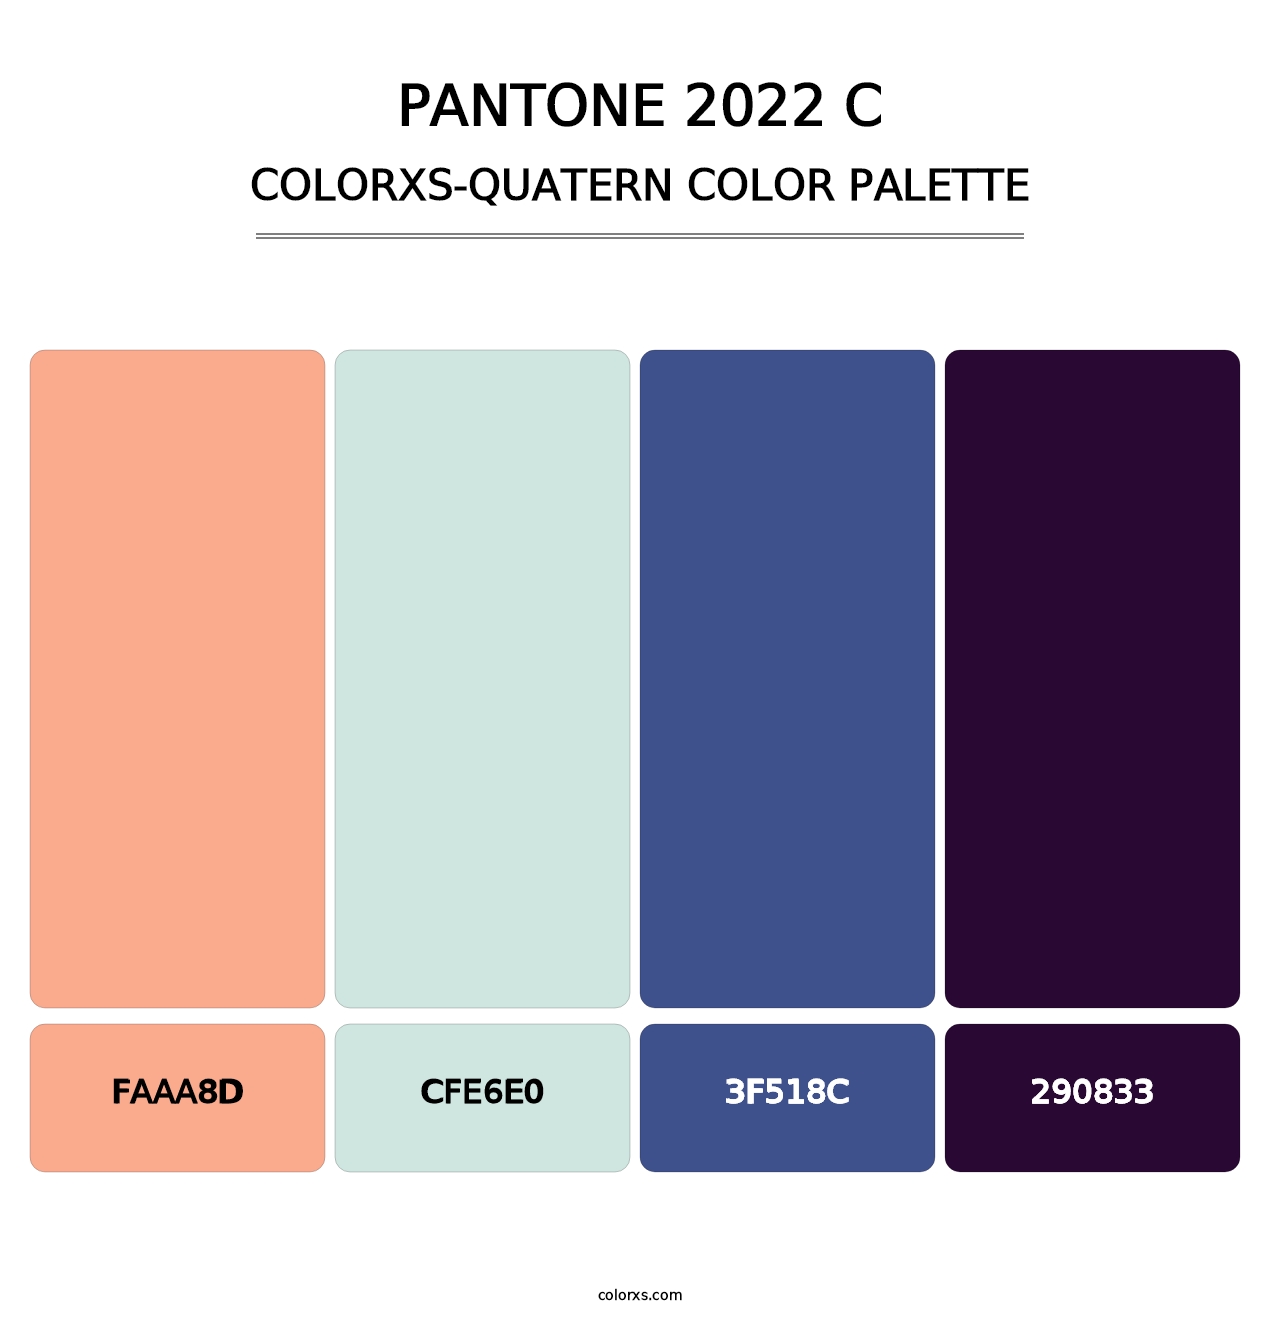 PANTONE 2022 C - Colorxs Quatern Palette